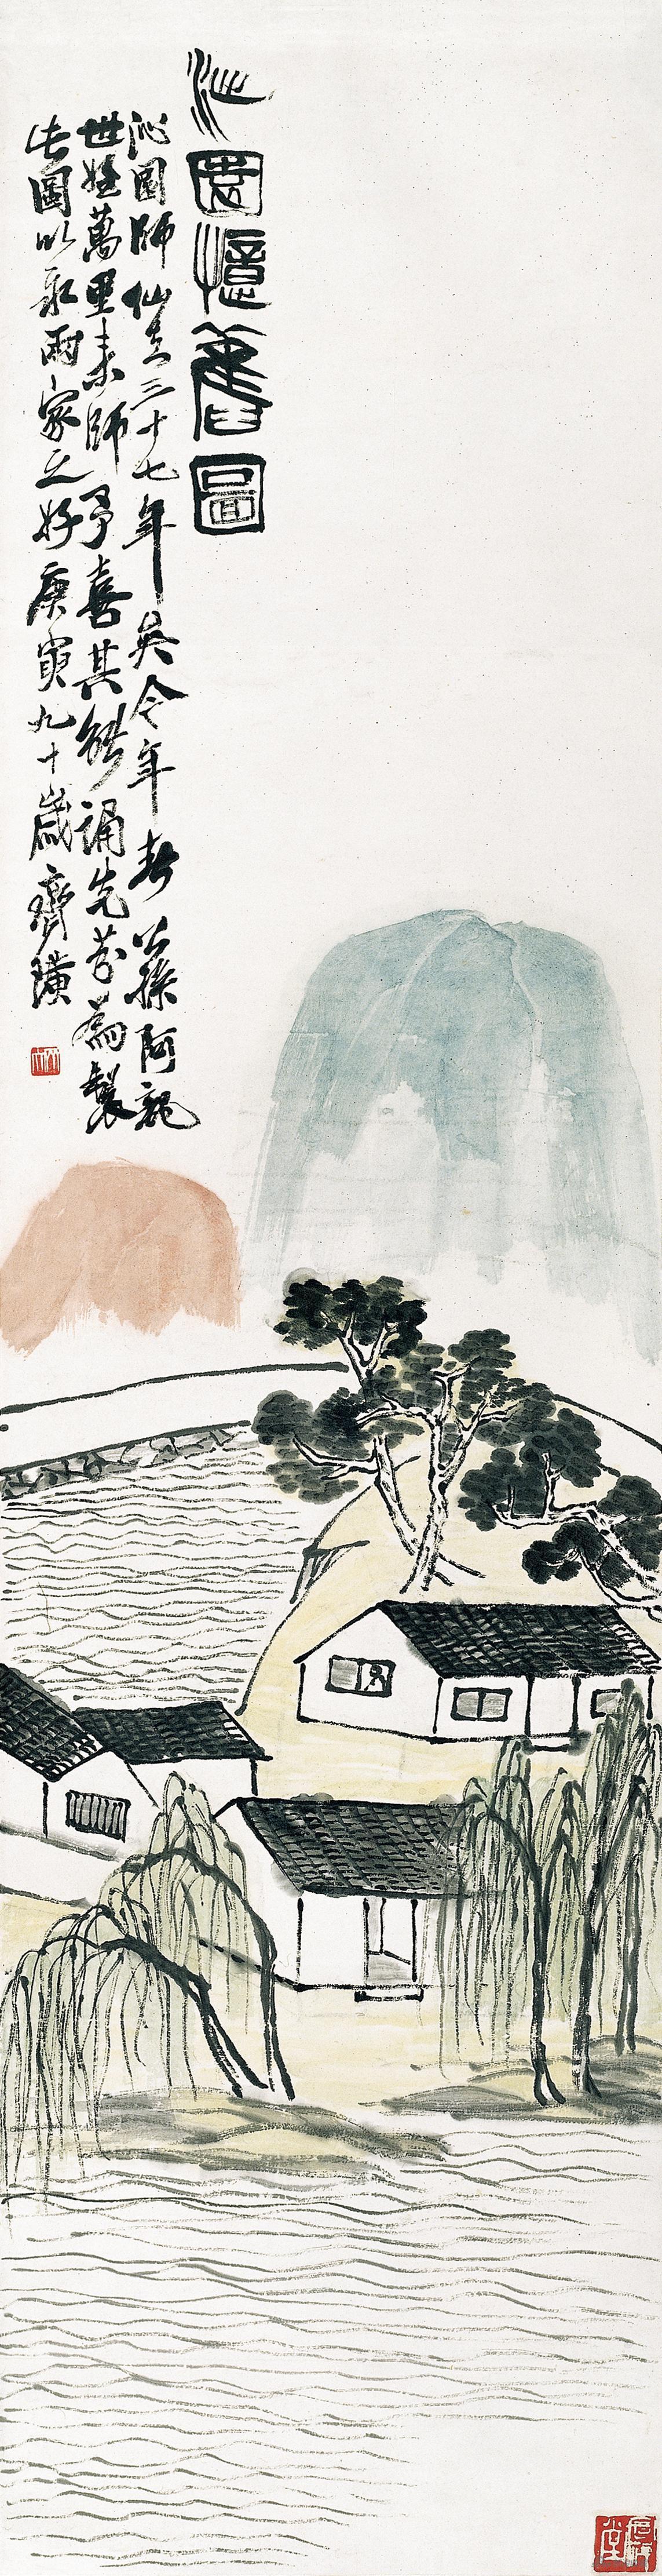 沁园忆旧图 齐白石 1950年 136.4×35.3cm 纸本设色 辽宁省博物馆藏